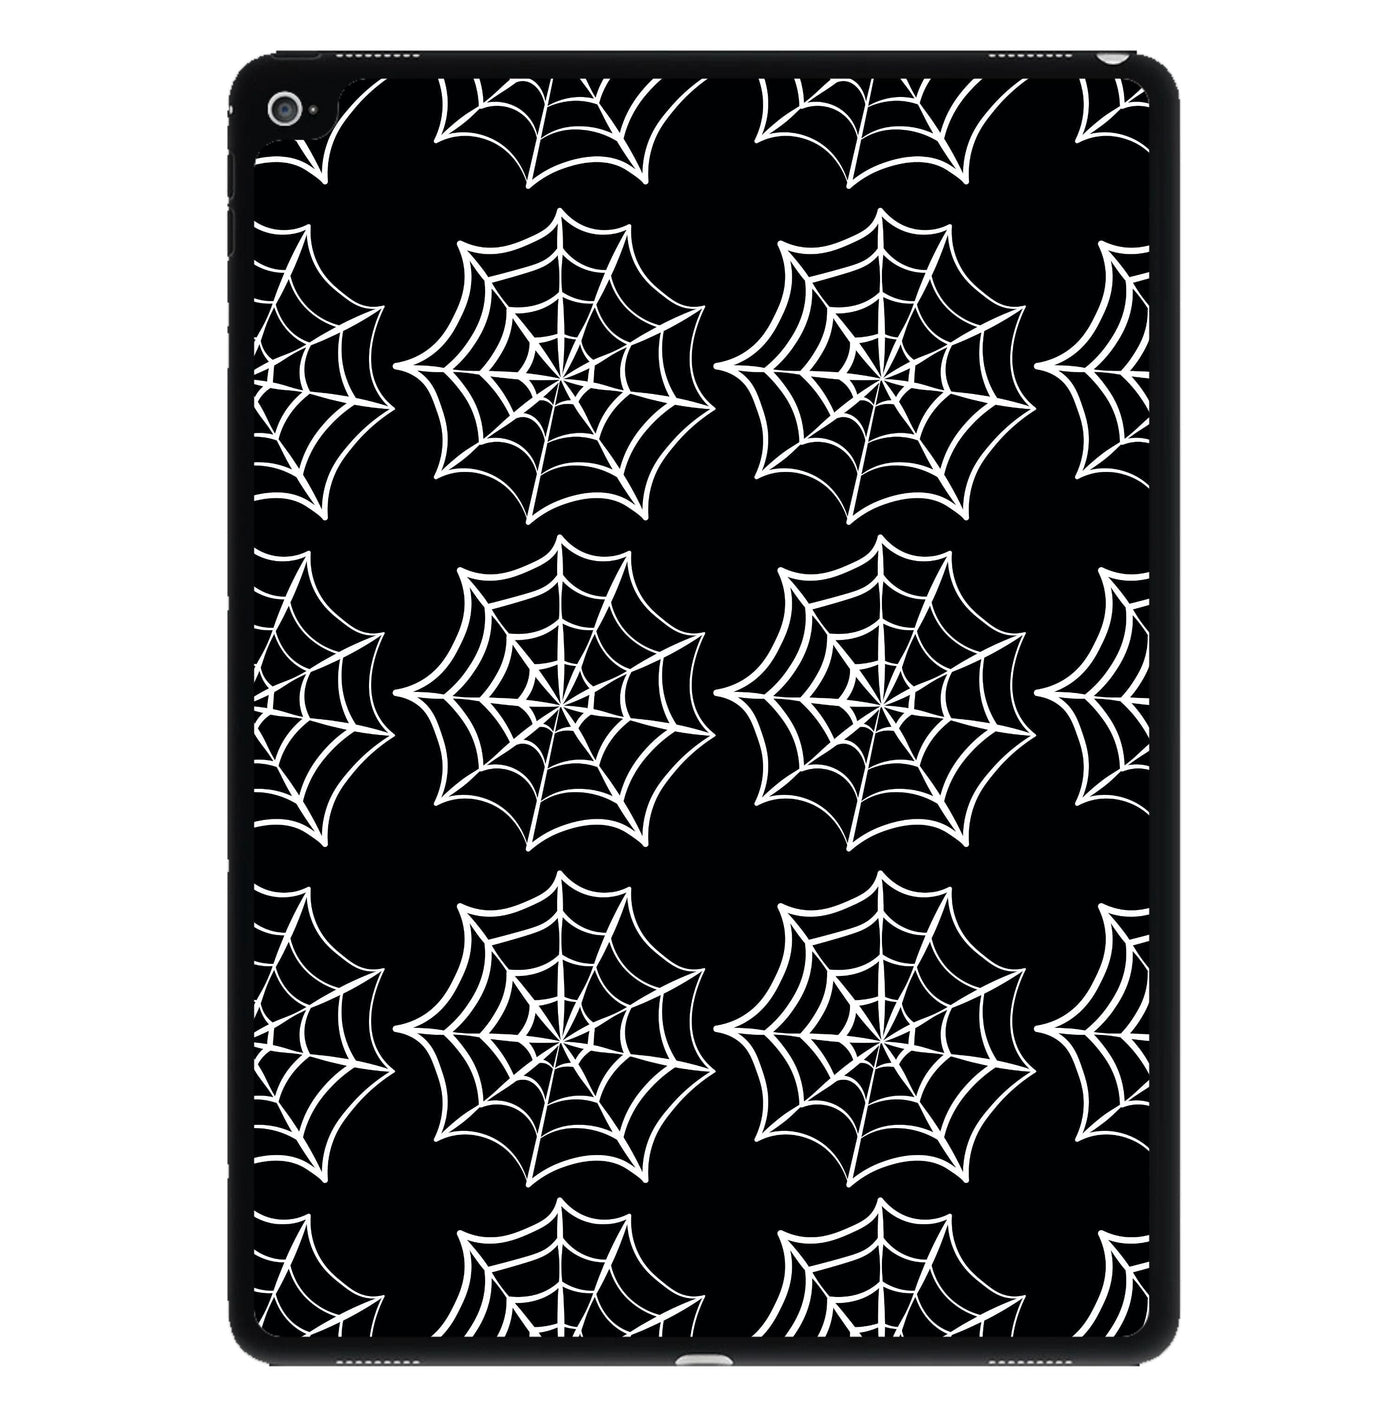 Cobwebs - Halloween iPad Case